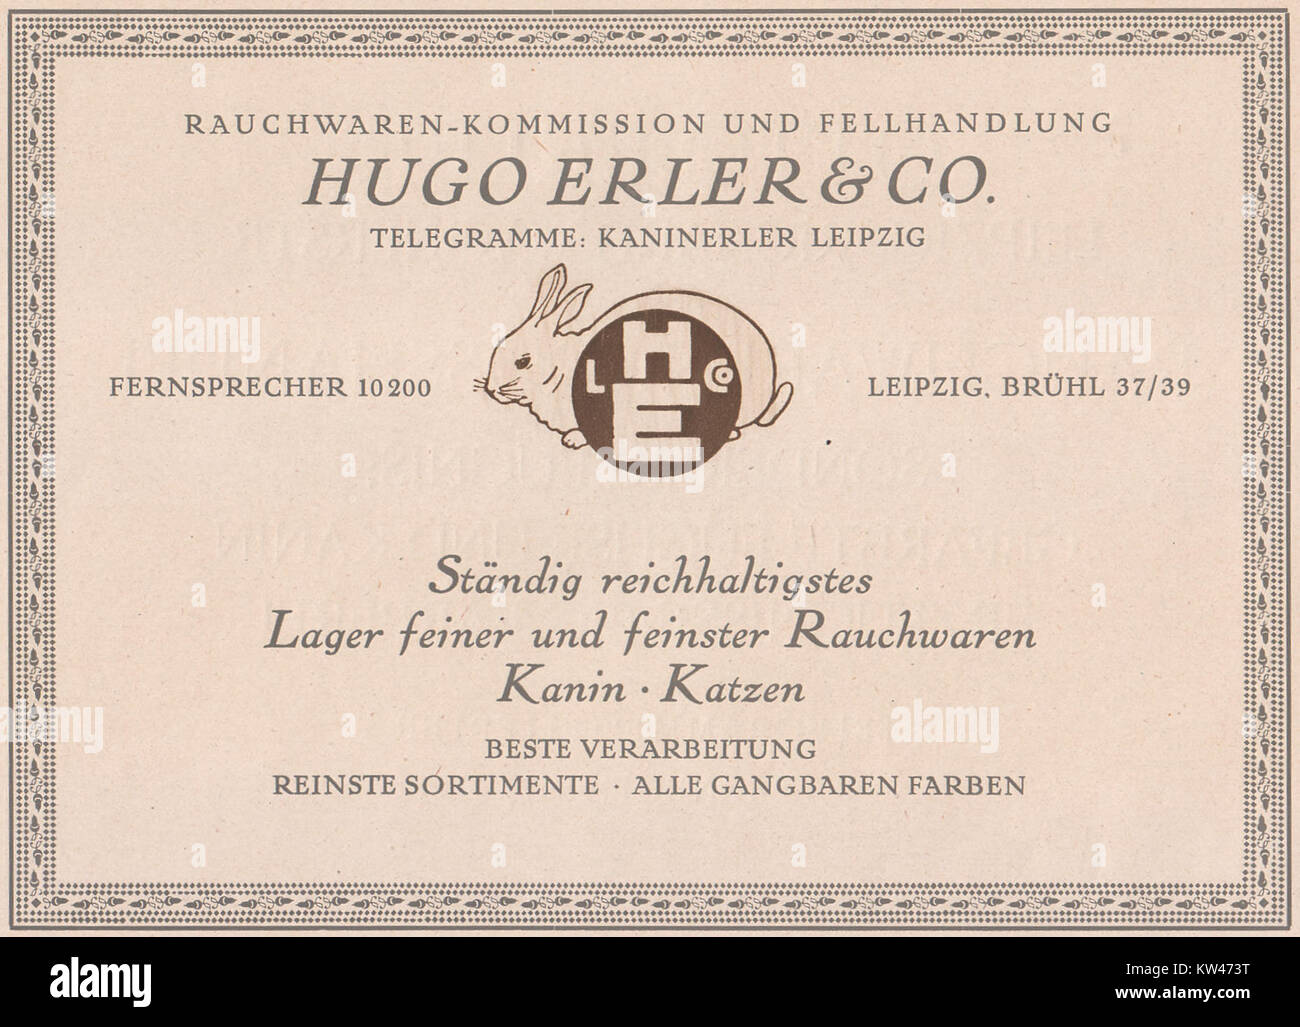 Hugo Erler & Co., Rauchwaren Kommission und Fellhandlung, Leipzig, 1923, Anzeige Stock Photo